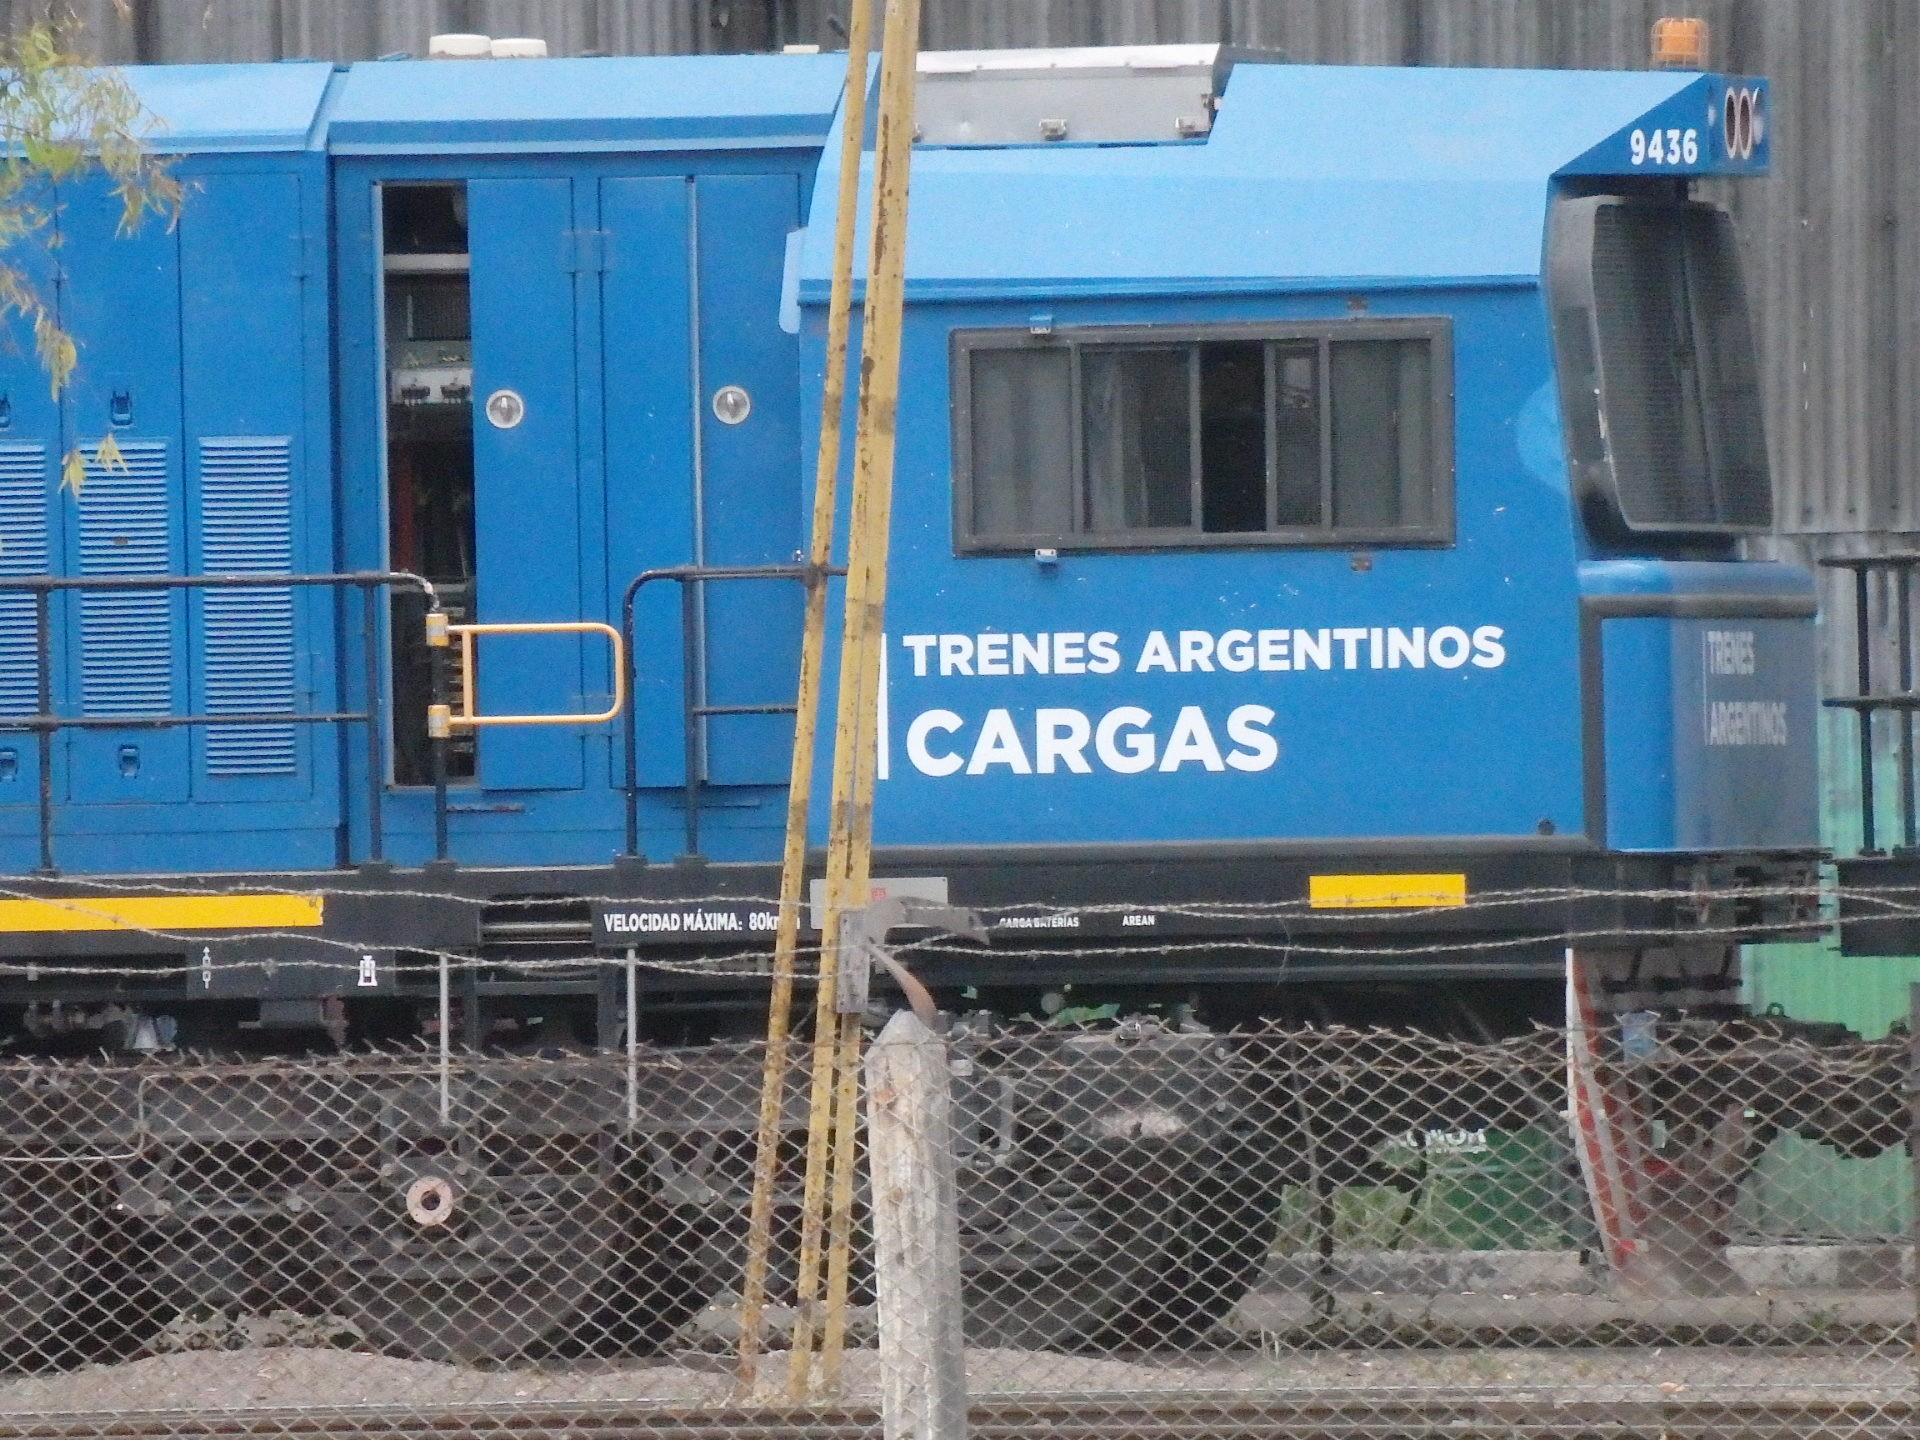 Foto: material rodante en el cuadro de la estación - Mendoza, Argentina